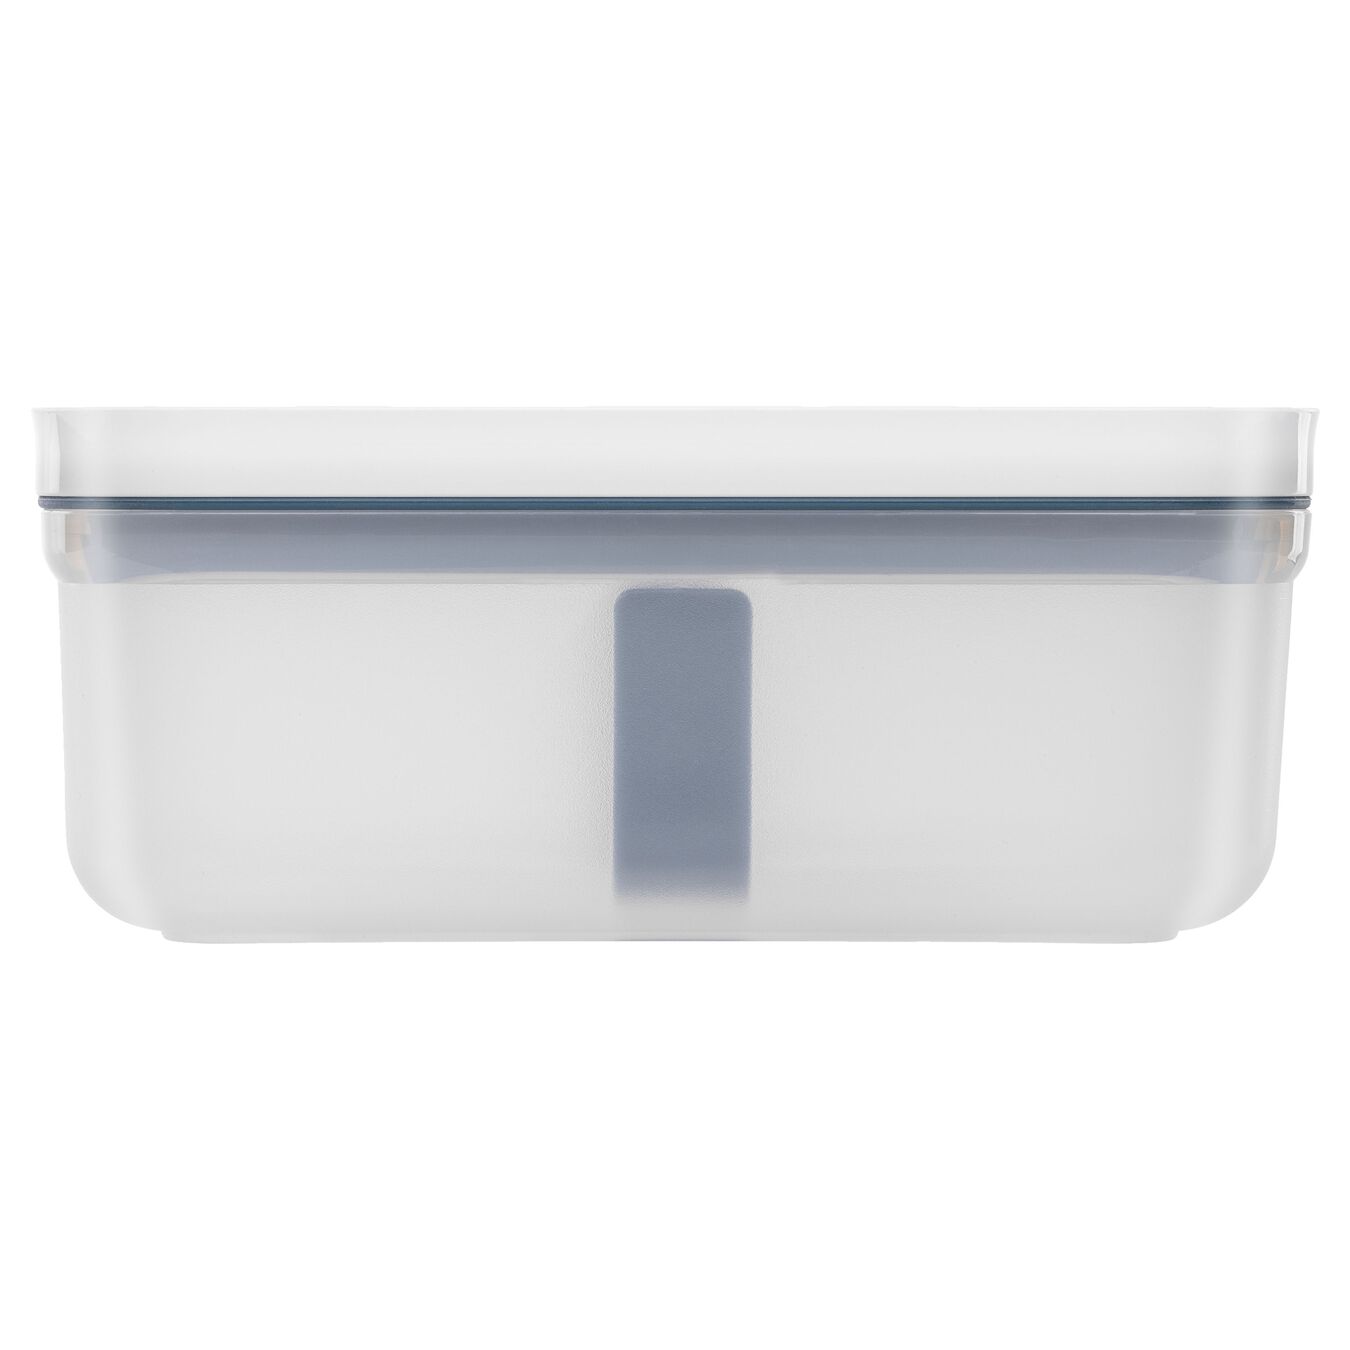 Vakumlu Yemek Taşıma Kabı, M, Plastik, yarı şeffaf-Akdeniz Mavisi,,large 3